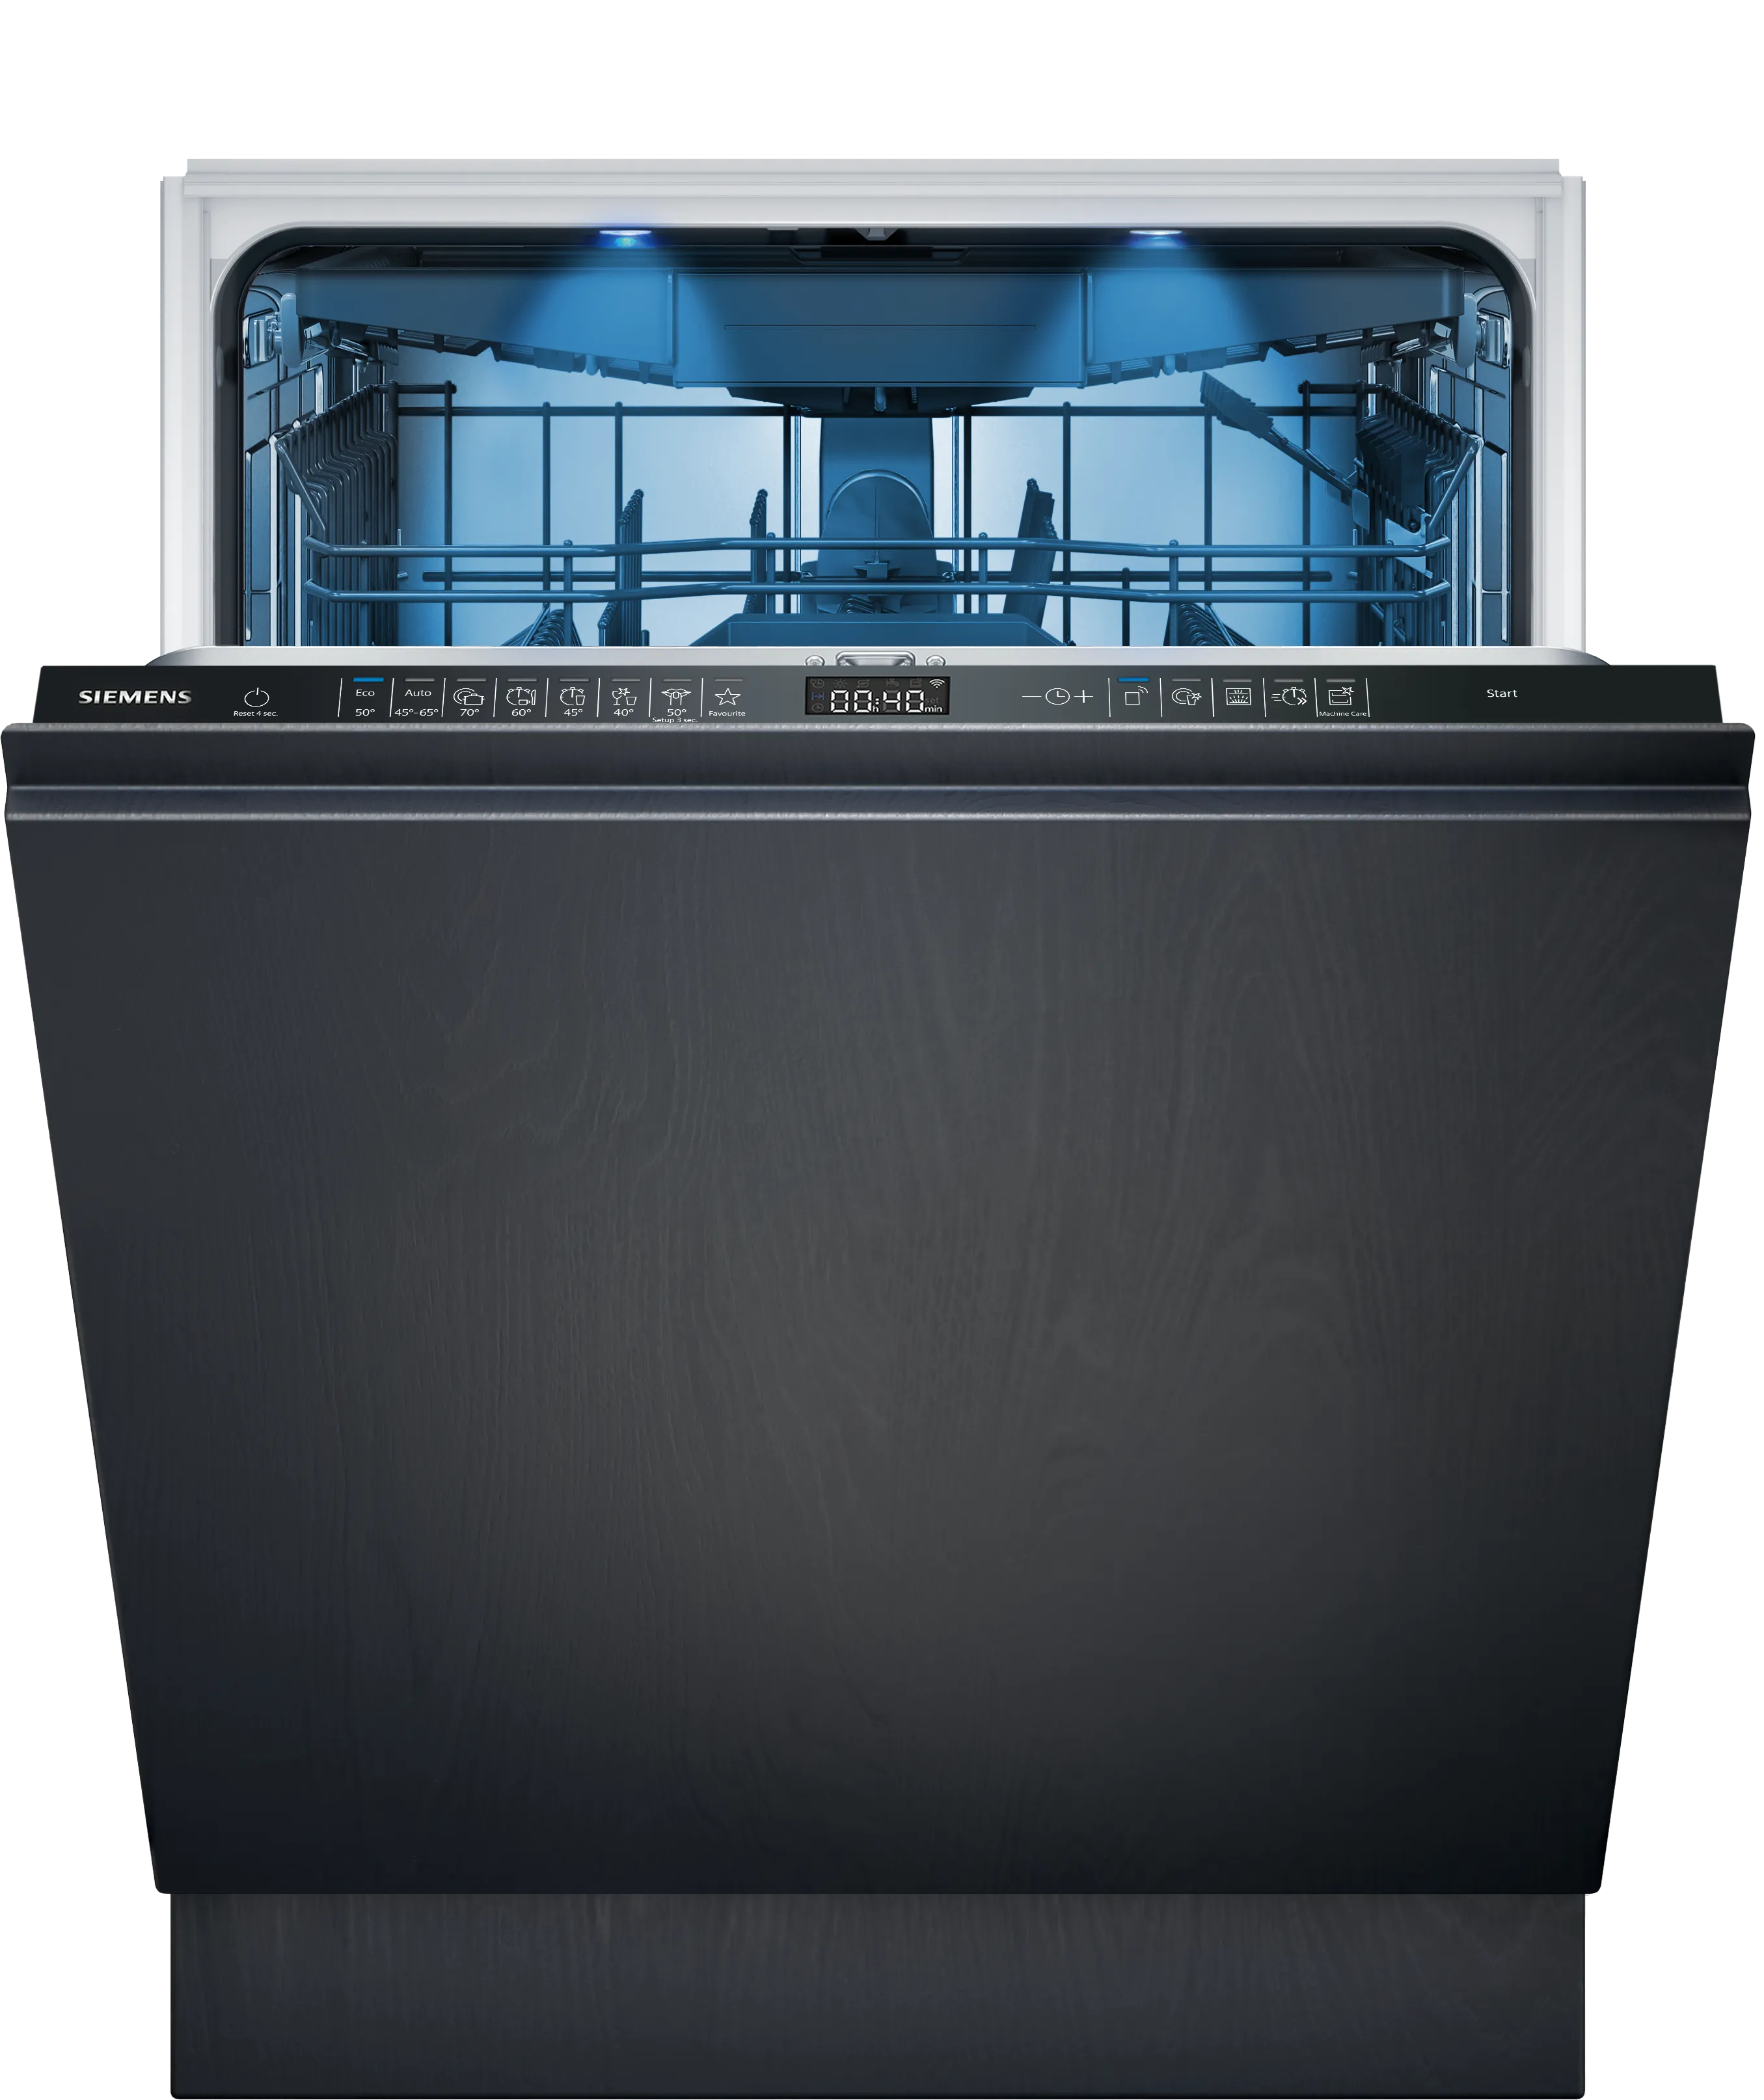 iQ500 Helintegrert oppvaskmaskin 60 cm , Justerbare hengsler for enkel montering 